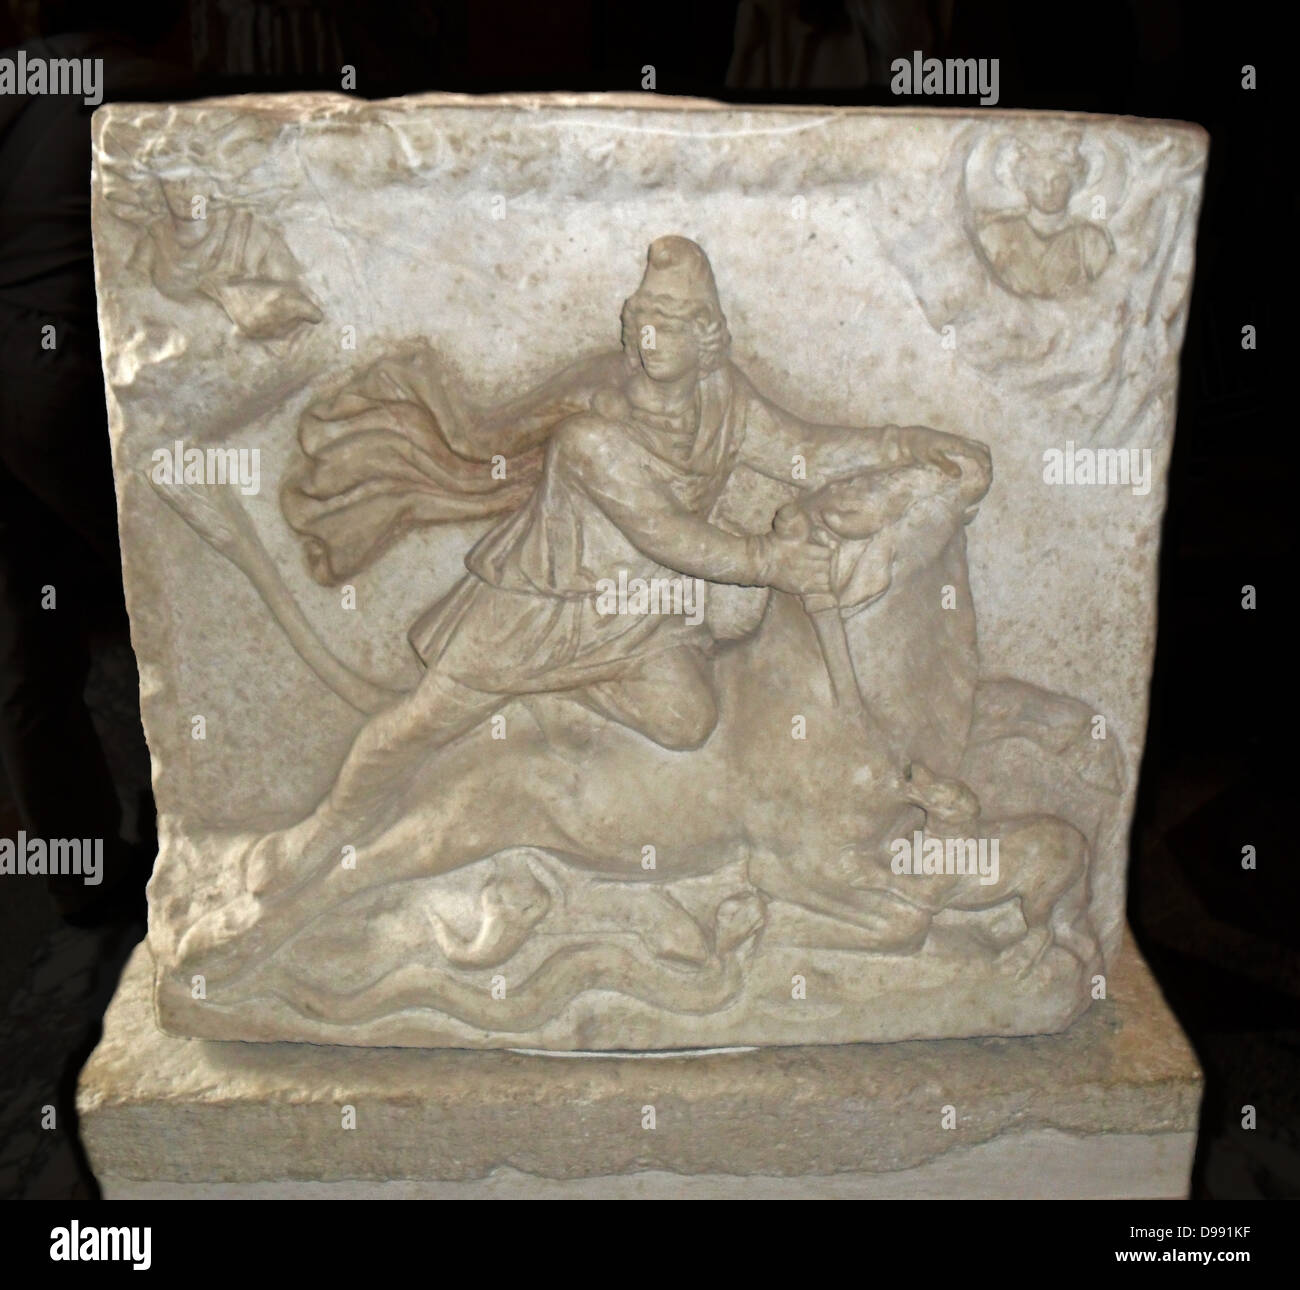 Relieve con dos lados representando los iraníes (persa) dios Mitra. Mitra era adorado en la antigua Roma desde la segunda mitad del I siglo DC. Fechas de alivio de la 2ª o 3ª siglo. Foto de stock